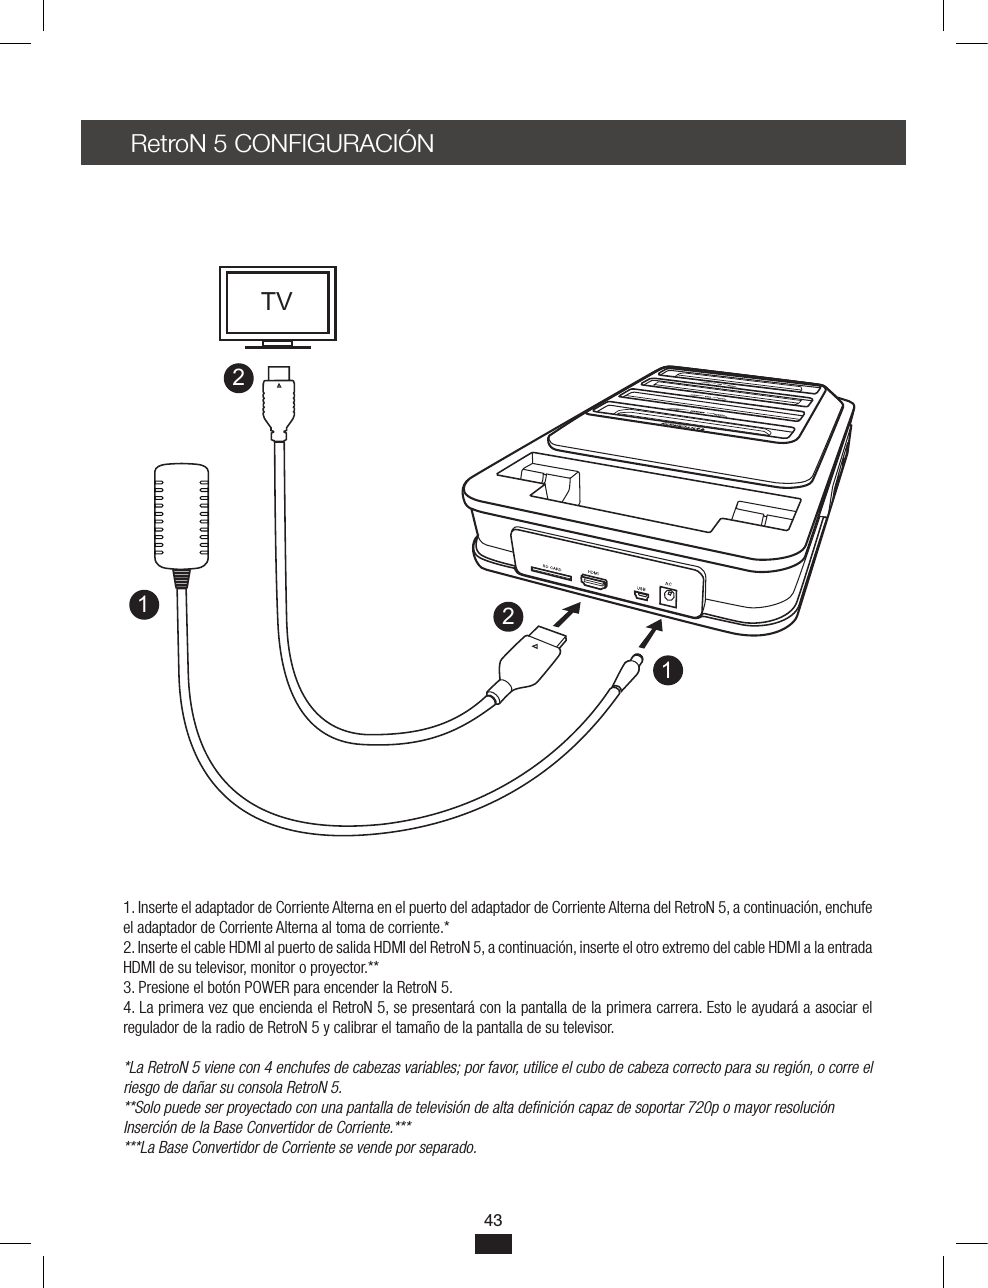 43RetroN 5 CONFIGURACIÓN1. Inserte el adaptador de Corriente Alterna en el puerto del adaptador de Corriente Alterna del RetroN 5, a continuación, enchufe el adaptador de Corriente Alterna al toma de corriente.*2. Inserte el cable HDMI al puerto de salida HDMI del RetroN 5, a continuación, inserte el otro extremo del cable HDMI a la entrada HDMI de su televisor, monitor o proyector.** 3. Presione el botón POWER para encender la RetroN 5.4. La primera vez que encienda el RetroN 5, se presentará con la pantalla de la primera carrera. Esto le ayudará a asociar el regulador de la radio de RetroN 5 y calibrar el tamaño de la pantalla de su televisor.*La RetroN 5 viene con 4 enchufes de cabezas variables; por favor, utilice el cubo de cabeza correcto para su región, o corre el riesgo de dañar su consola RetroN 5.**Solo puede ser proyectado con una pantalla de televisión de alta denición capaz de soportar 720p o mayor resoluciónInserción de la Base Convertidor de Corriente.******La Base Convertidor de Corriente se vende por separado.1122TV